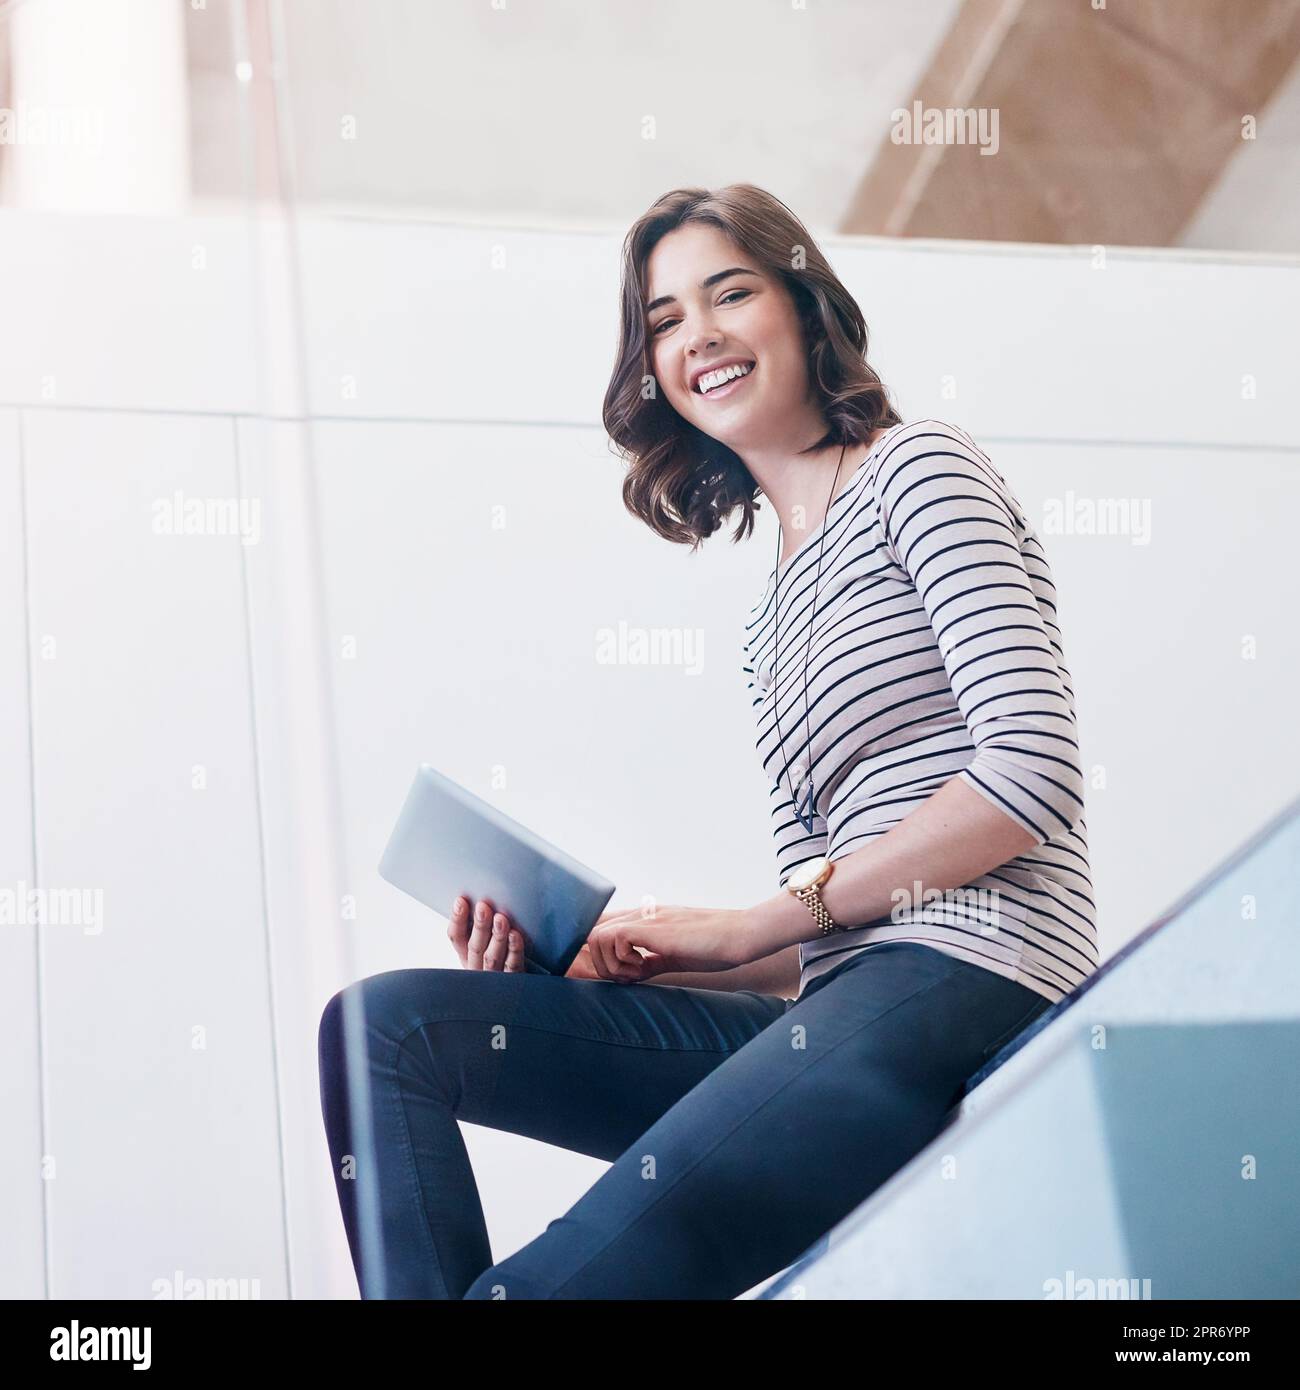 Mantenere aggiornato il mio profilo di affari in linea. Ritratto di una giovane donna d'affari che usa un tablet digitale sulle scale in un ufficio moderno. Foto Stock